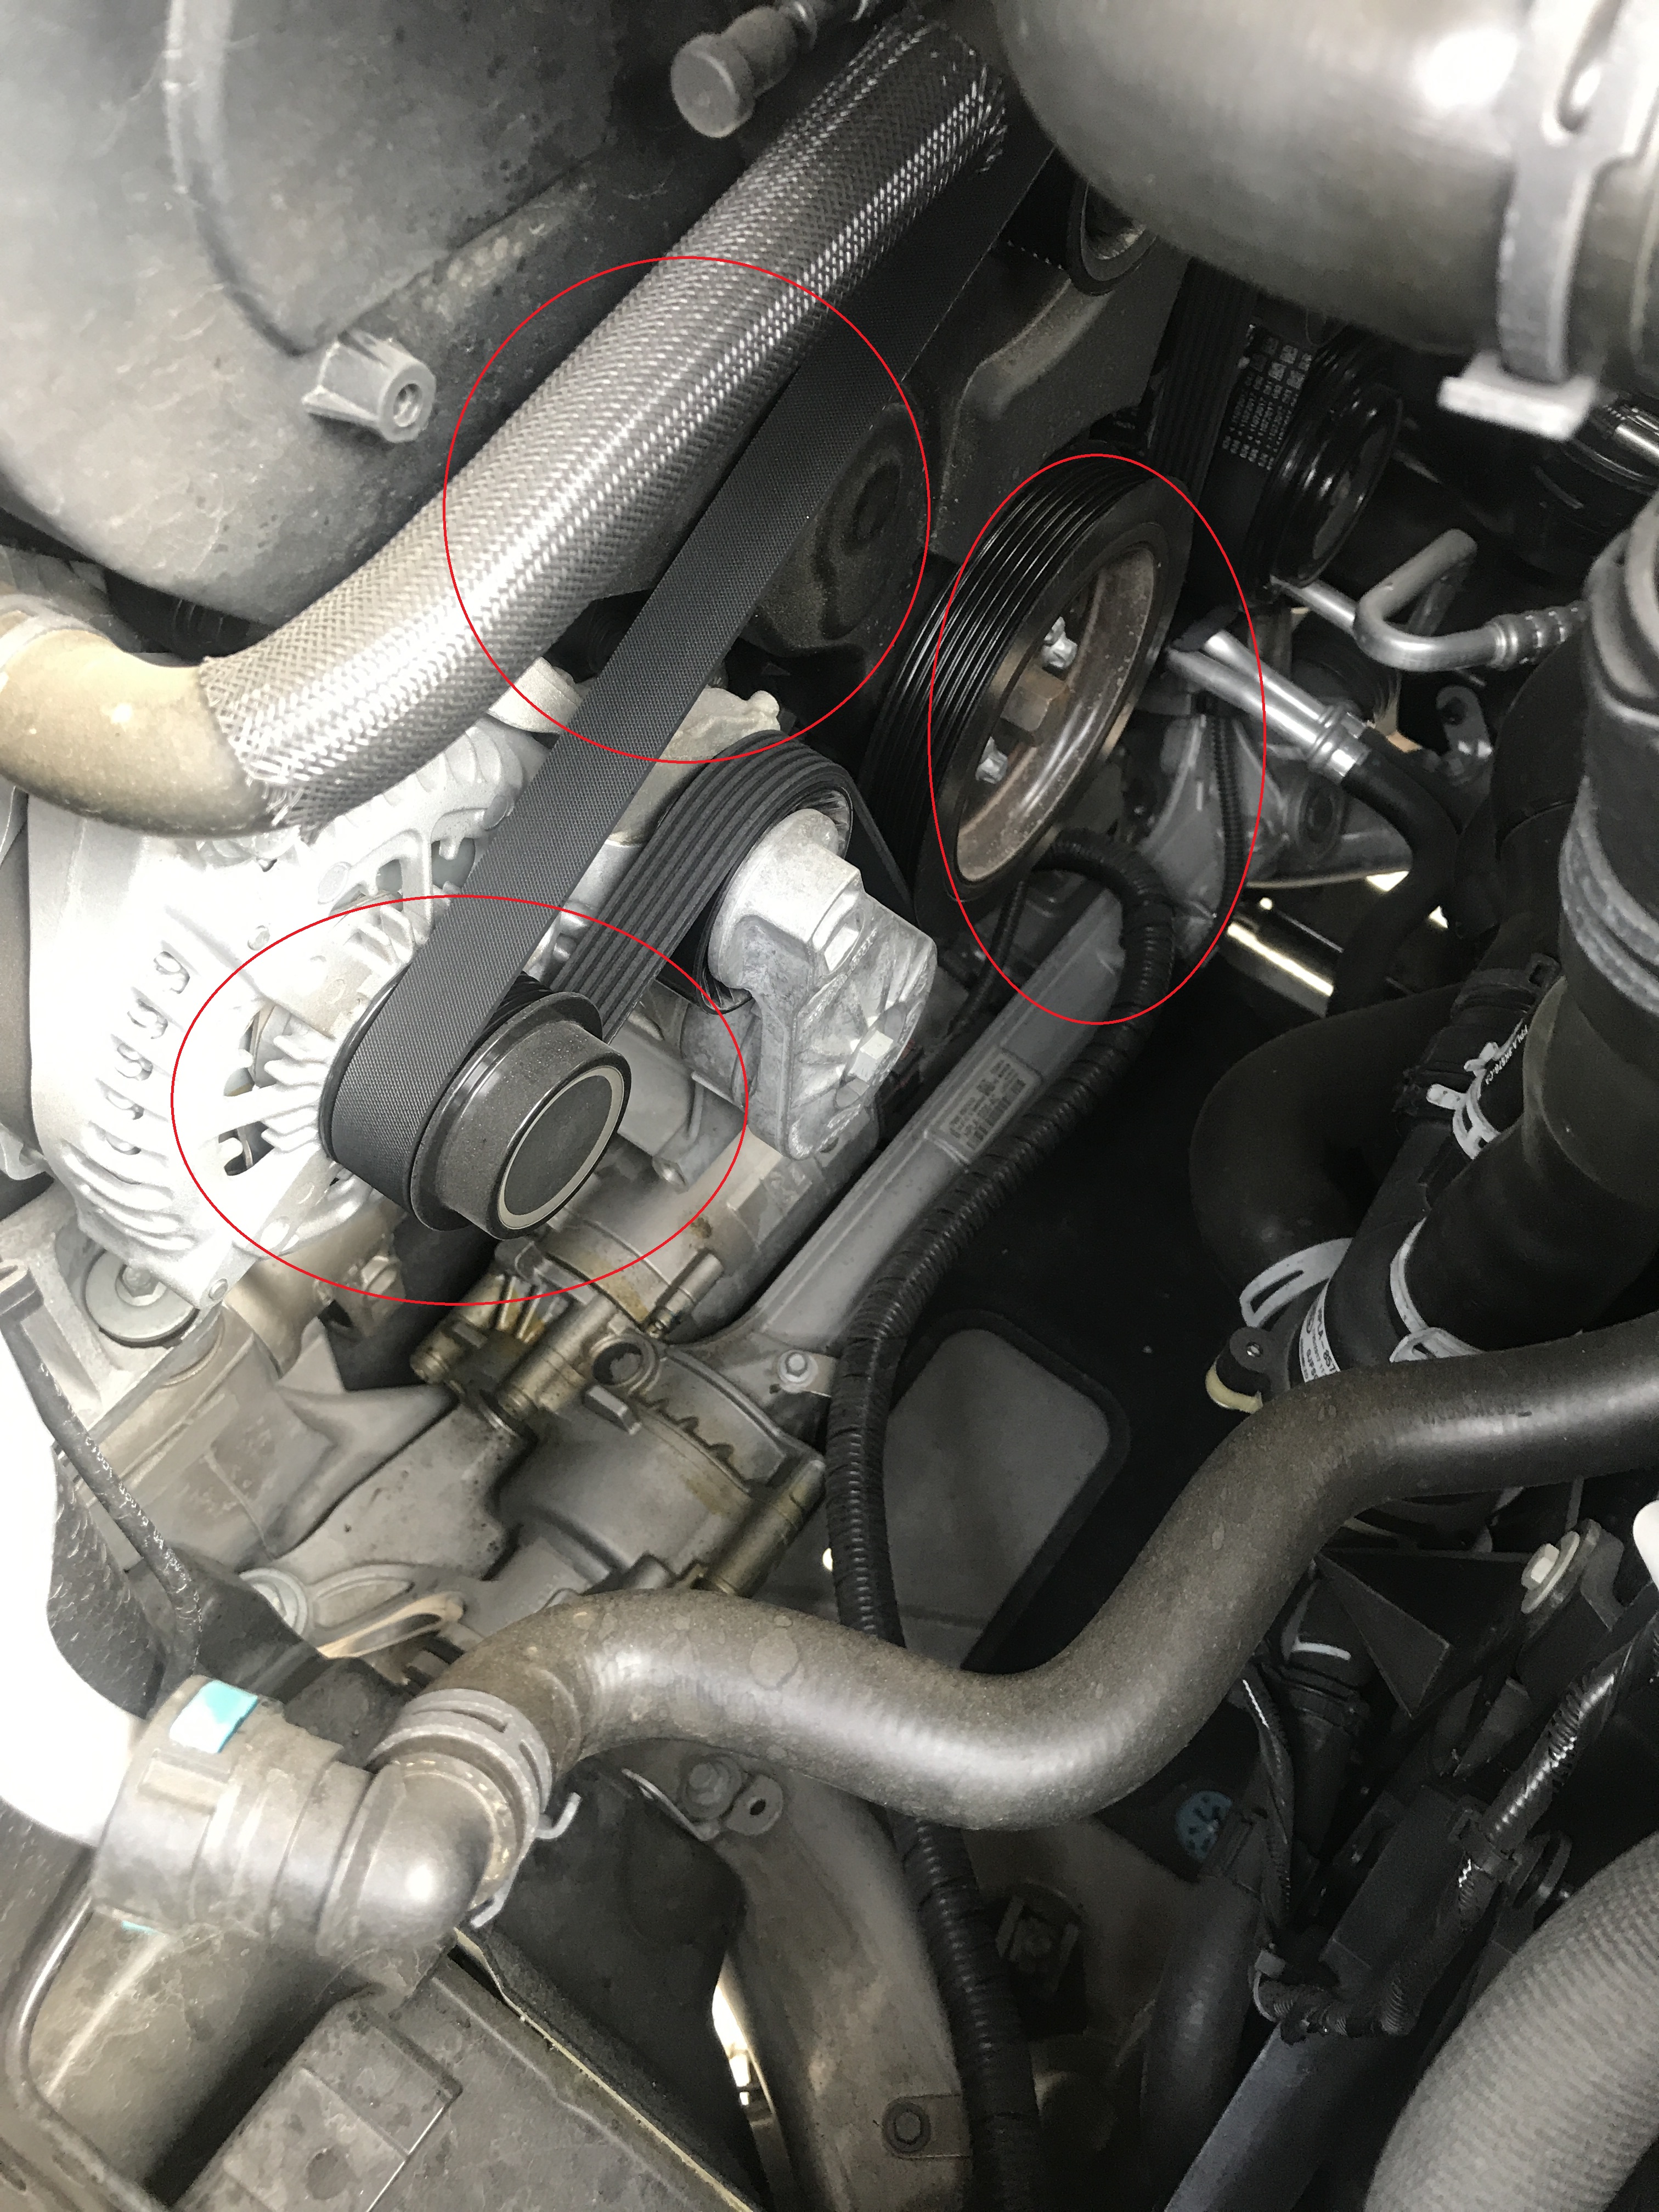 检查发动机前部易损件,惰轮,涨紧轮,发电机皮带未有更换痕迹存在.